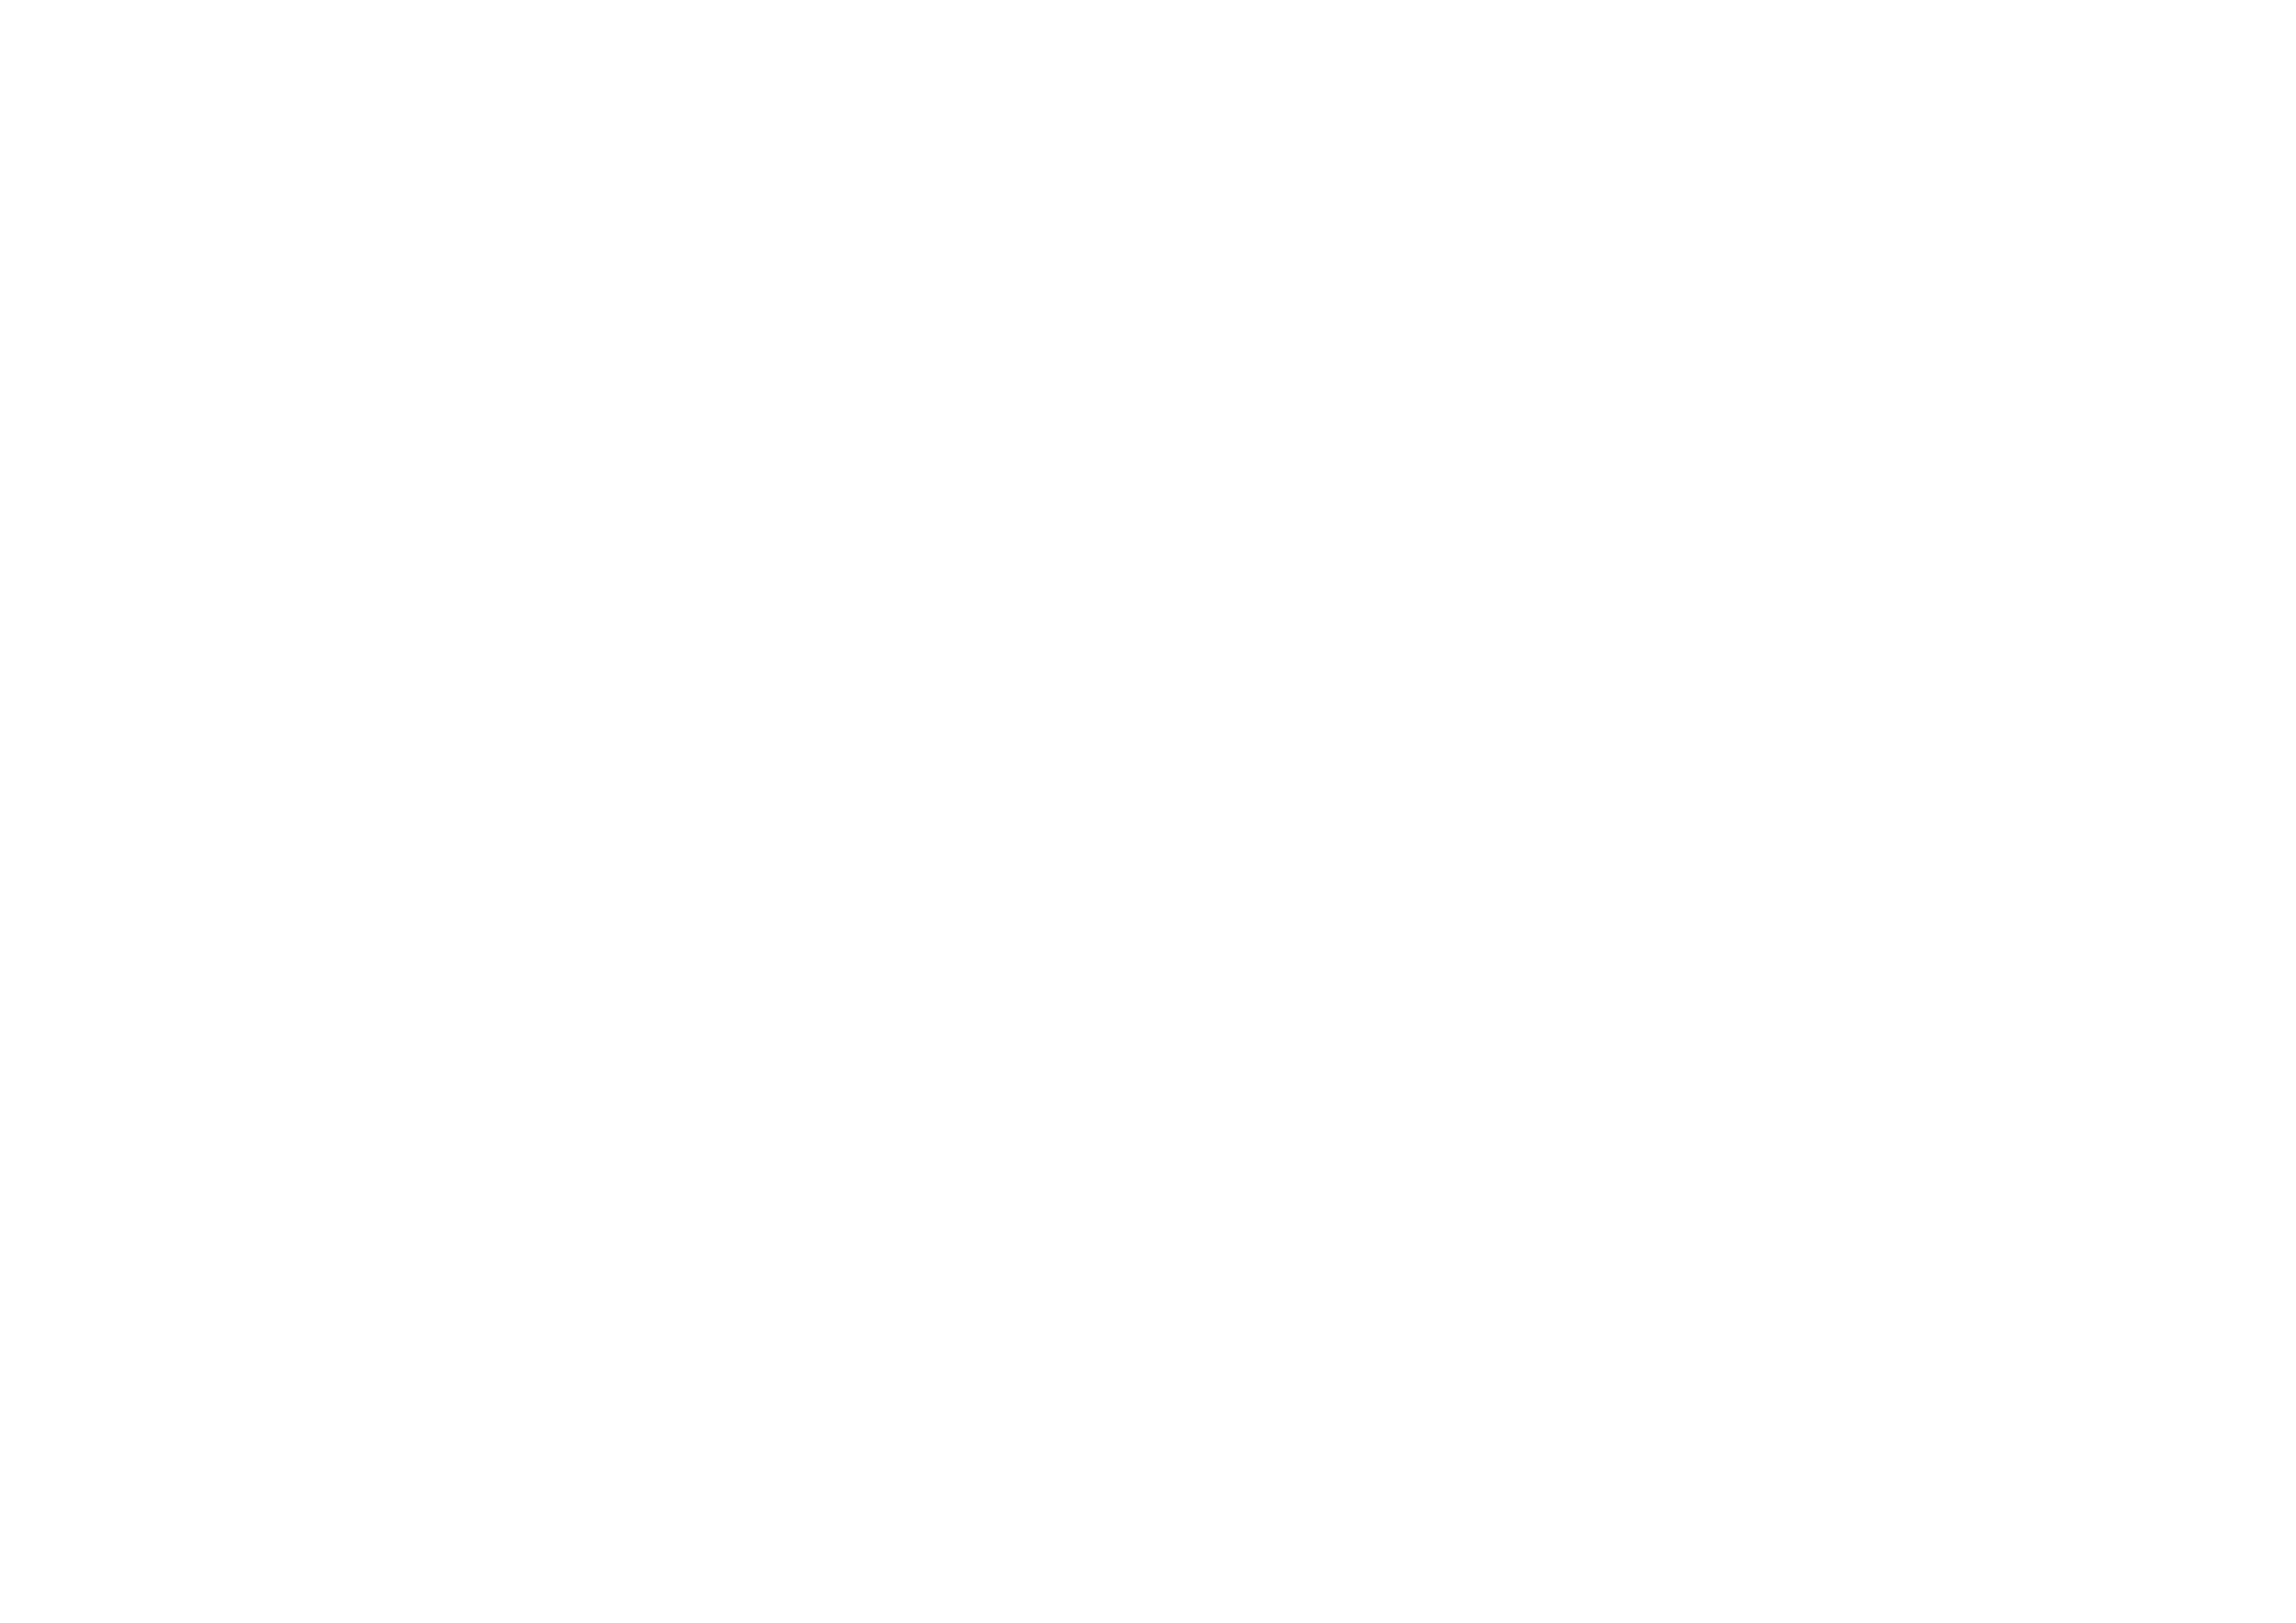 Hotel Trevo MS